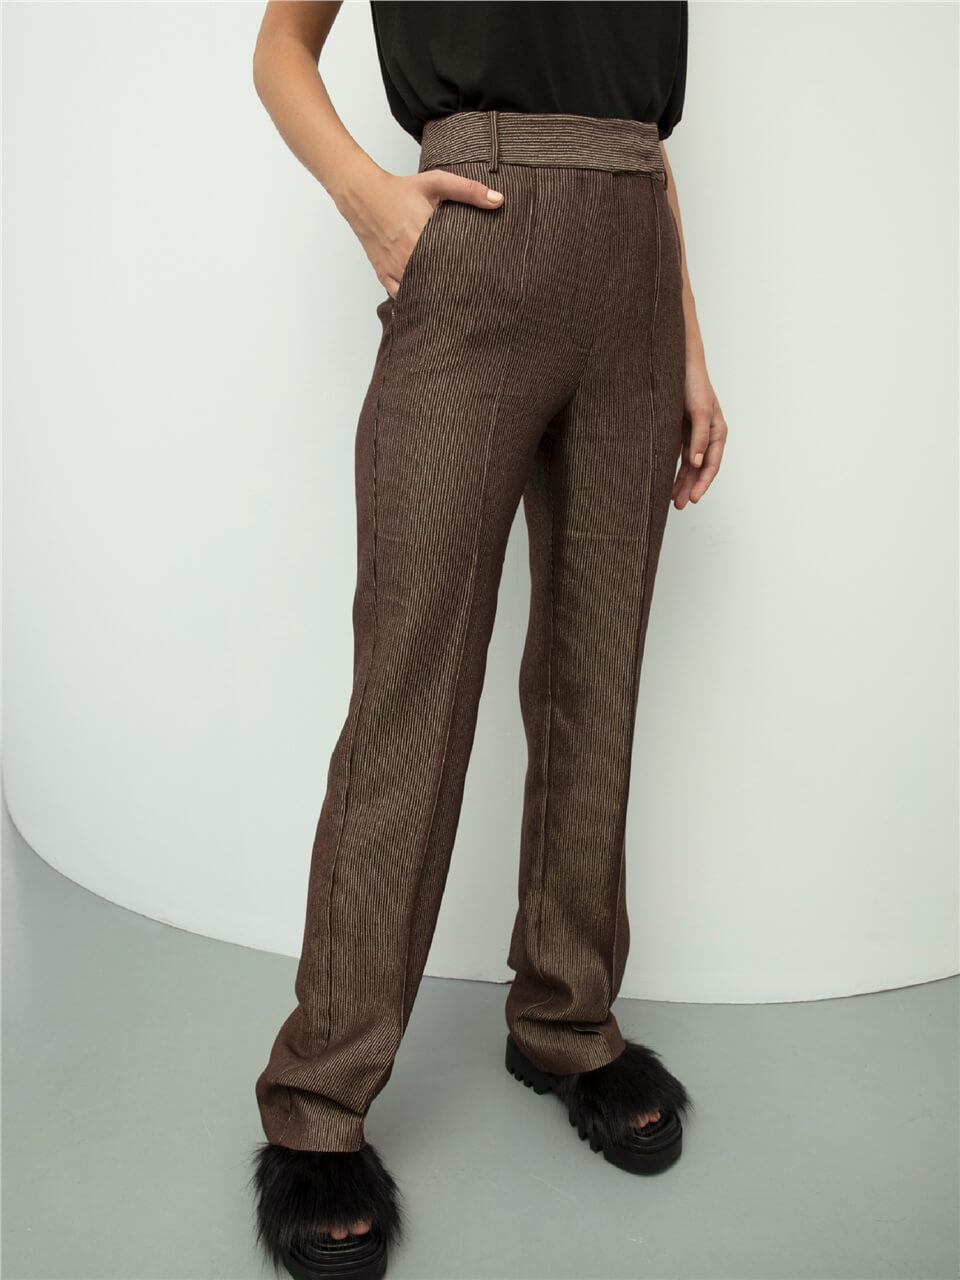 Shiny Brown Pants